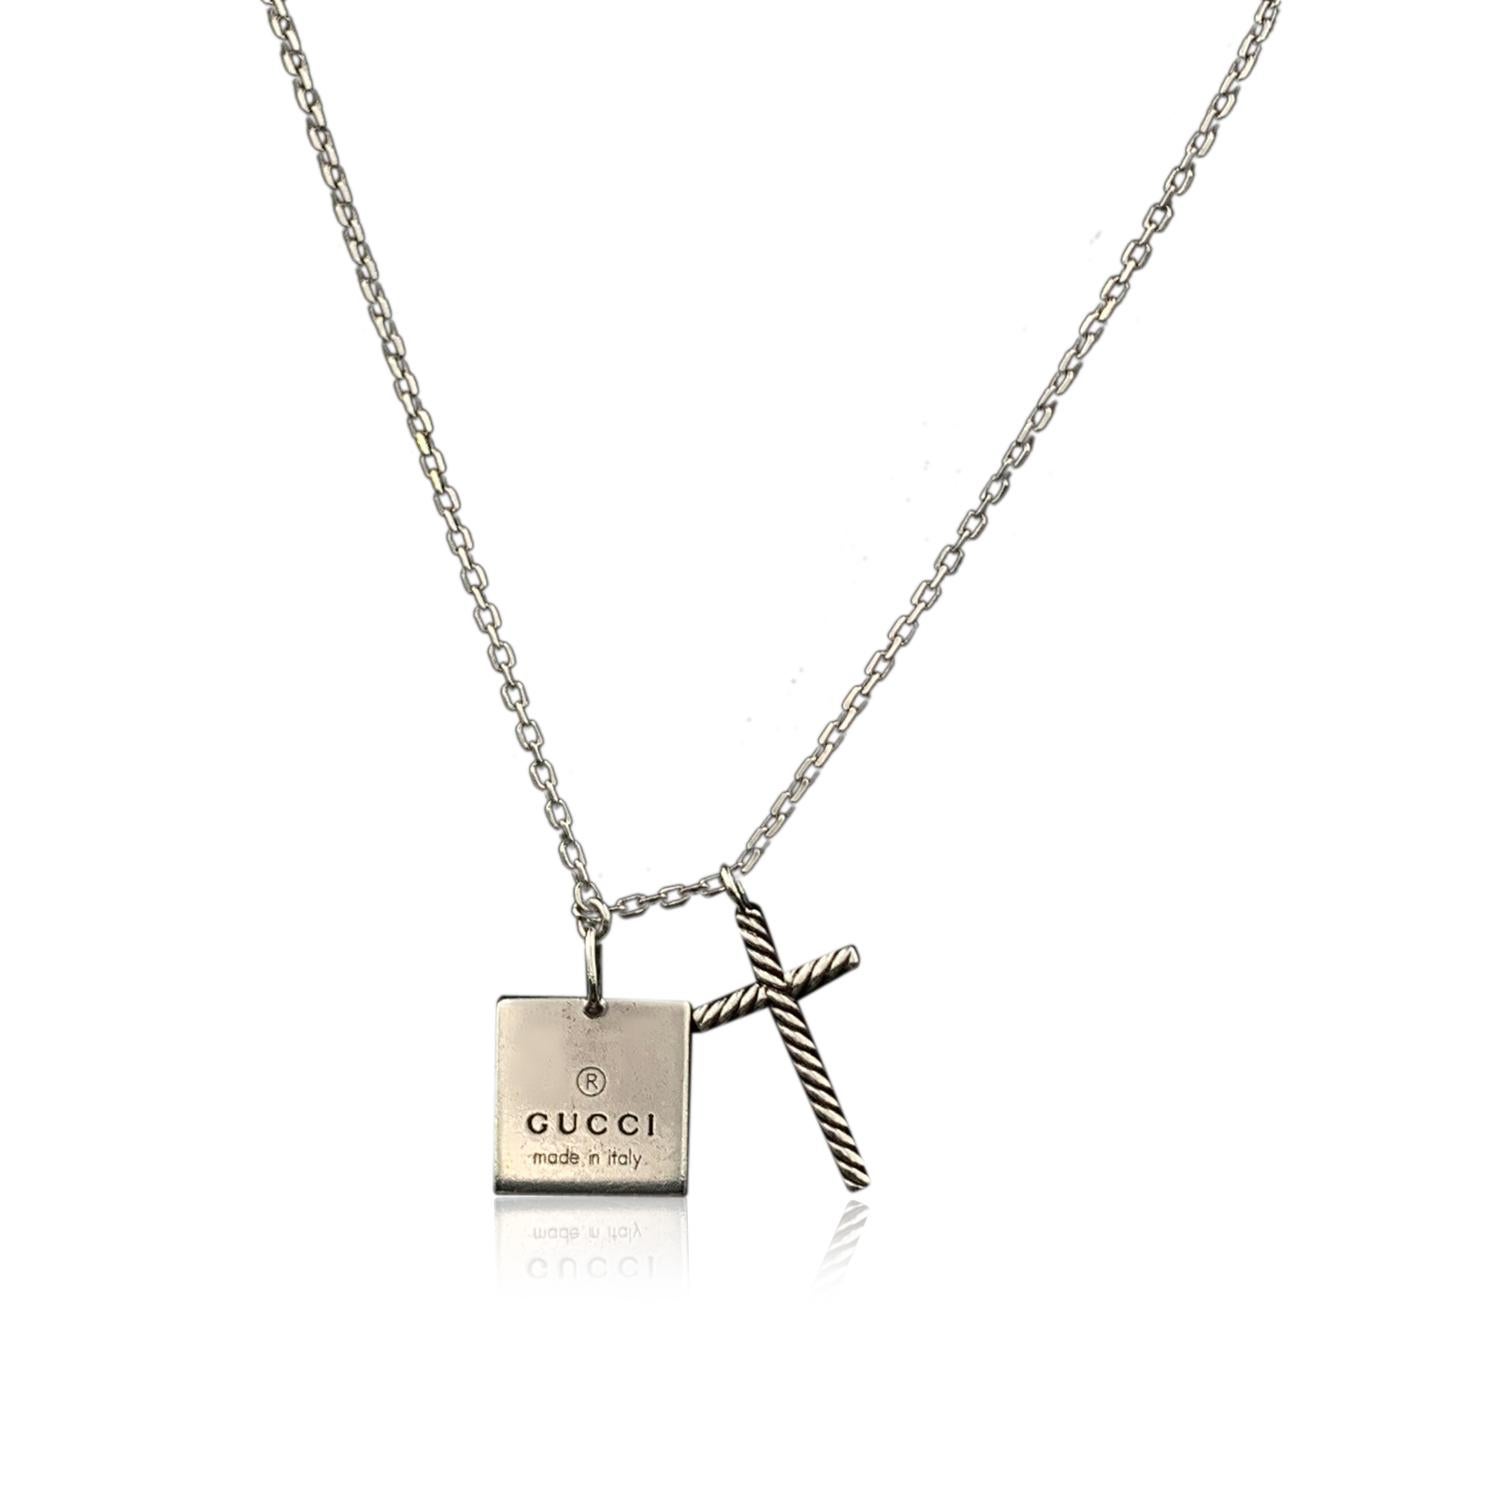 gucci necklace square pendant